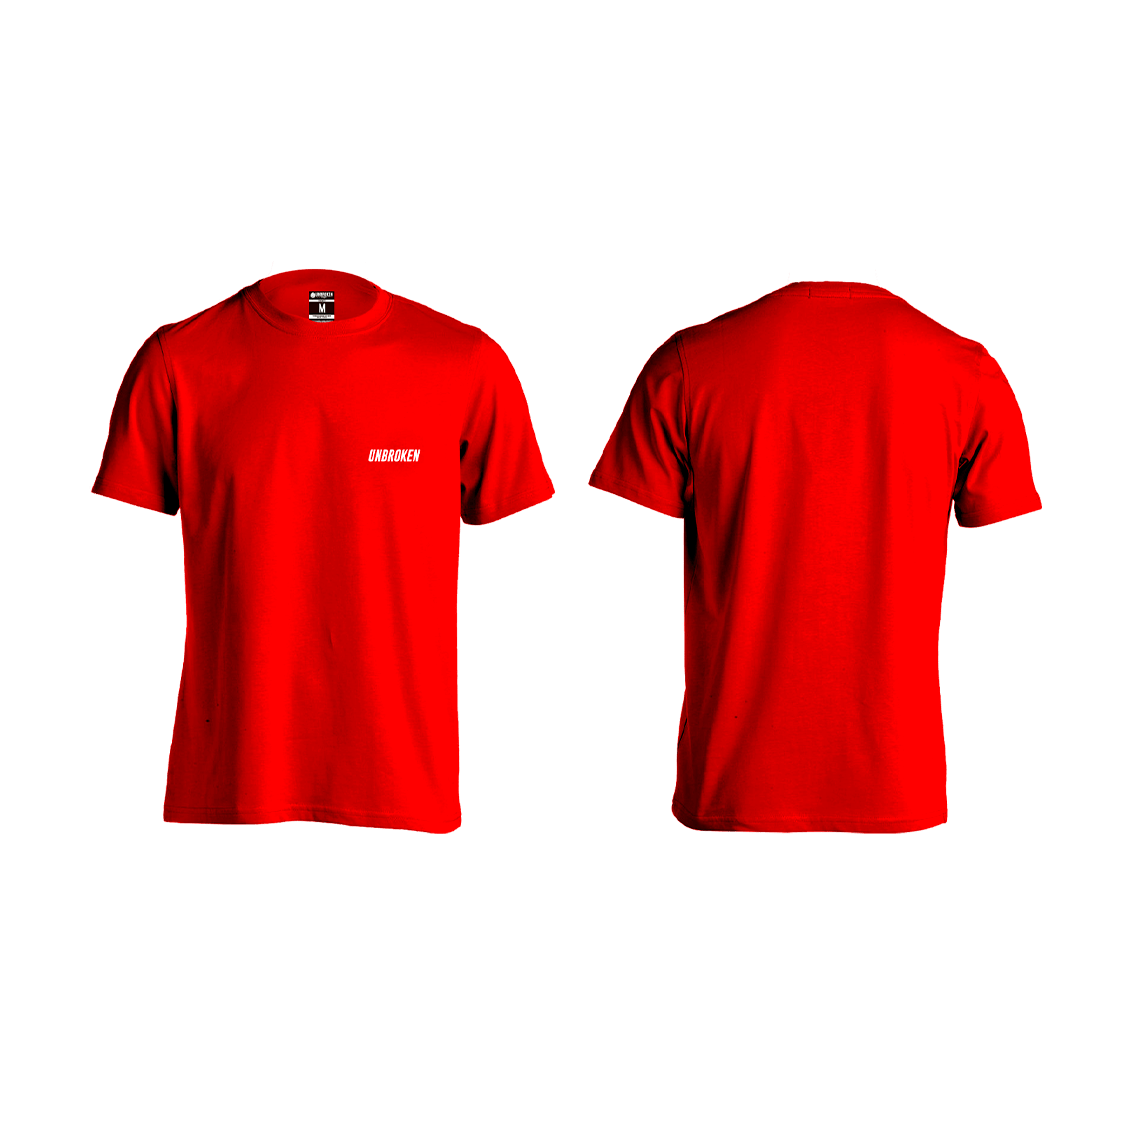 Camiseta Unbroken basic Red - Unbroken Sports Wear 